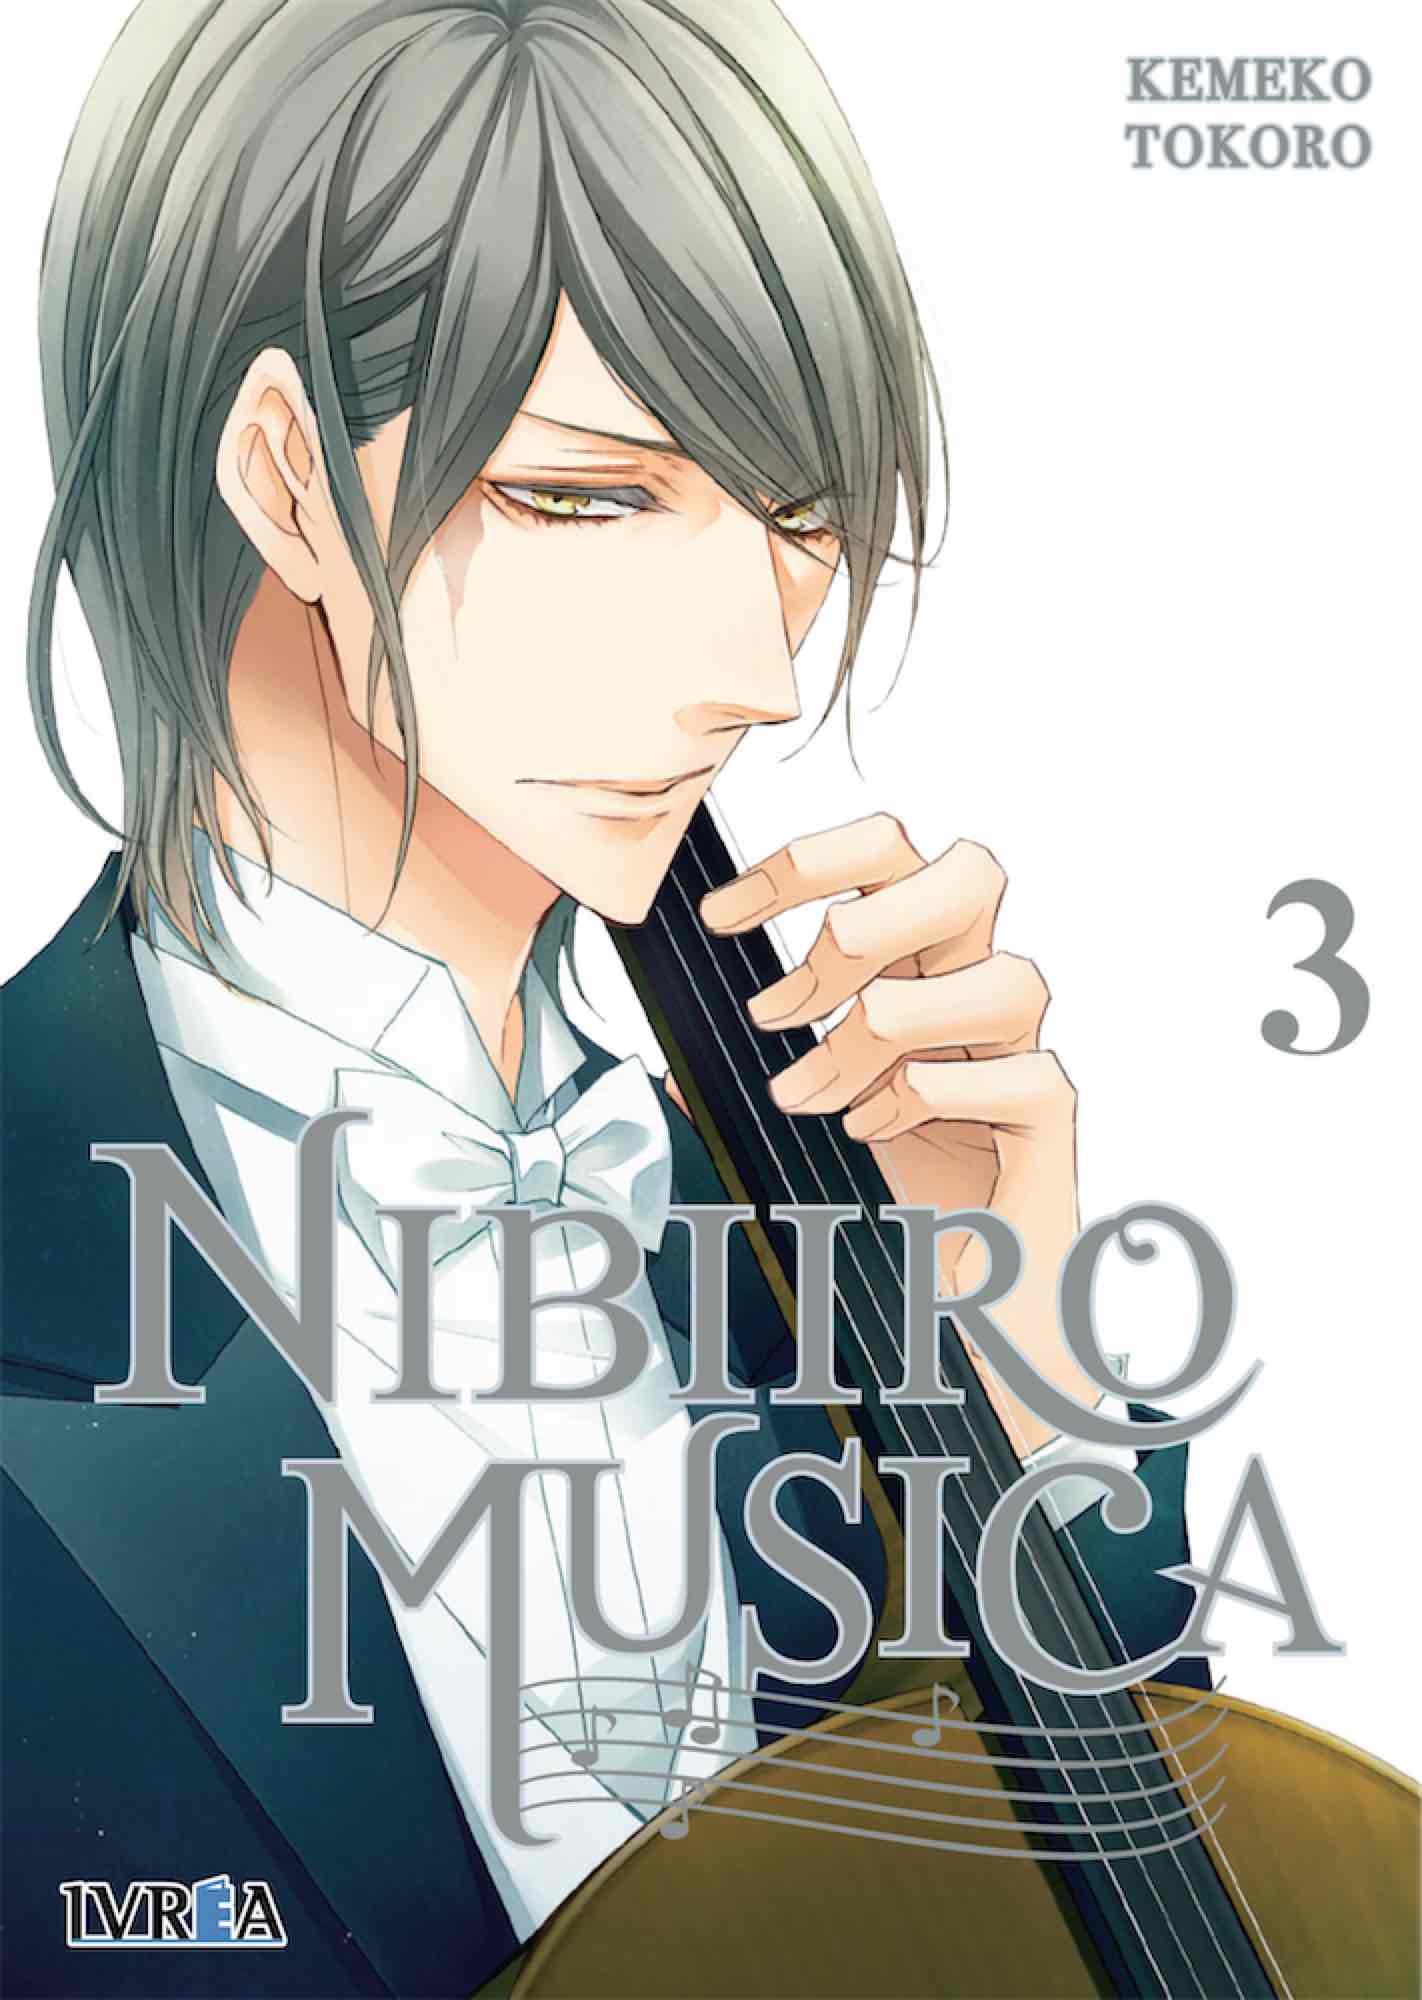 NIBIIRO MUSICA 03